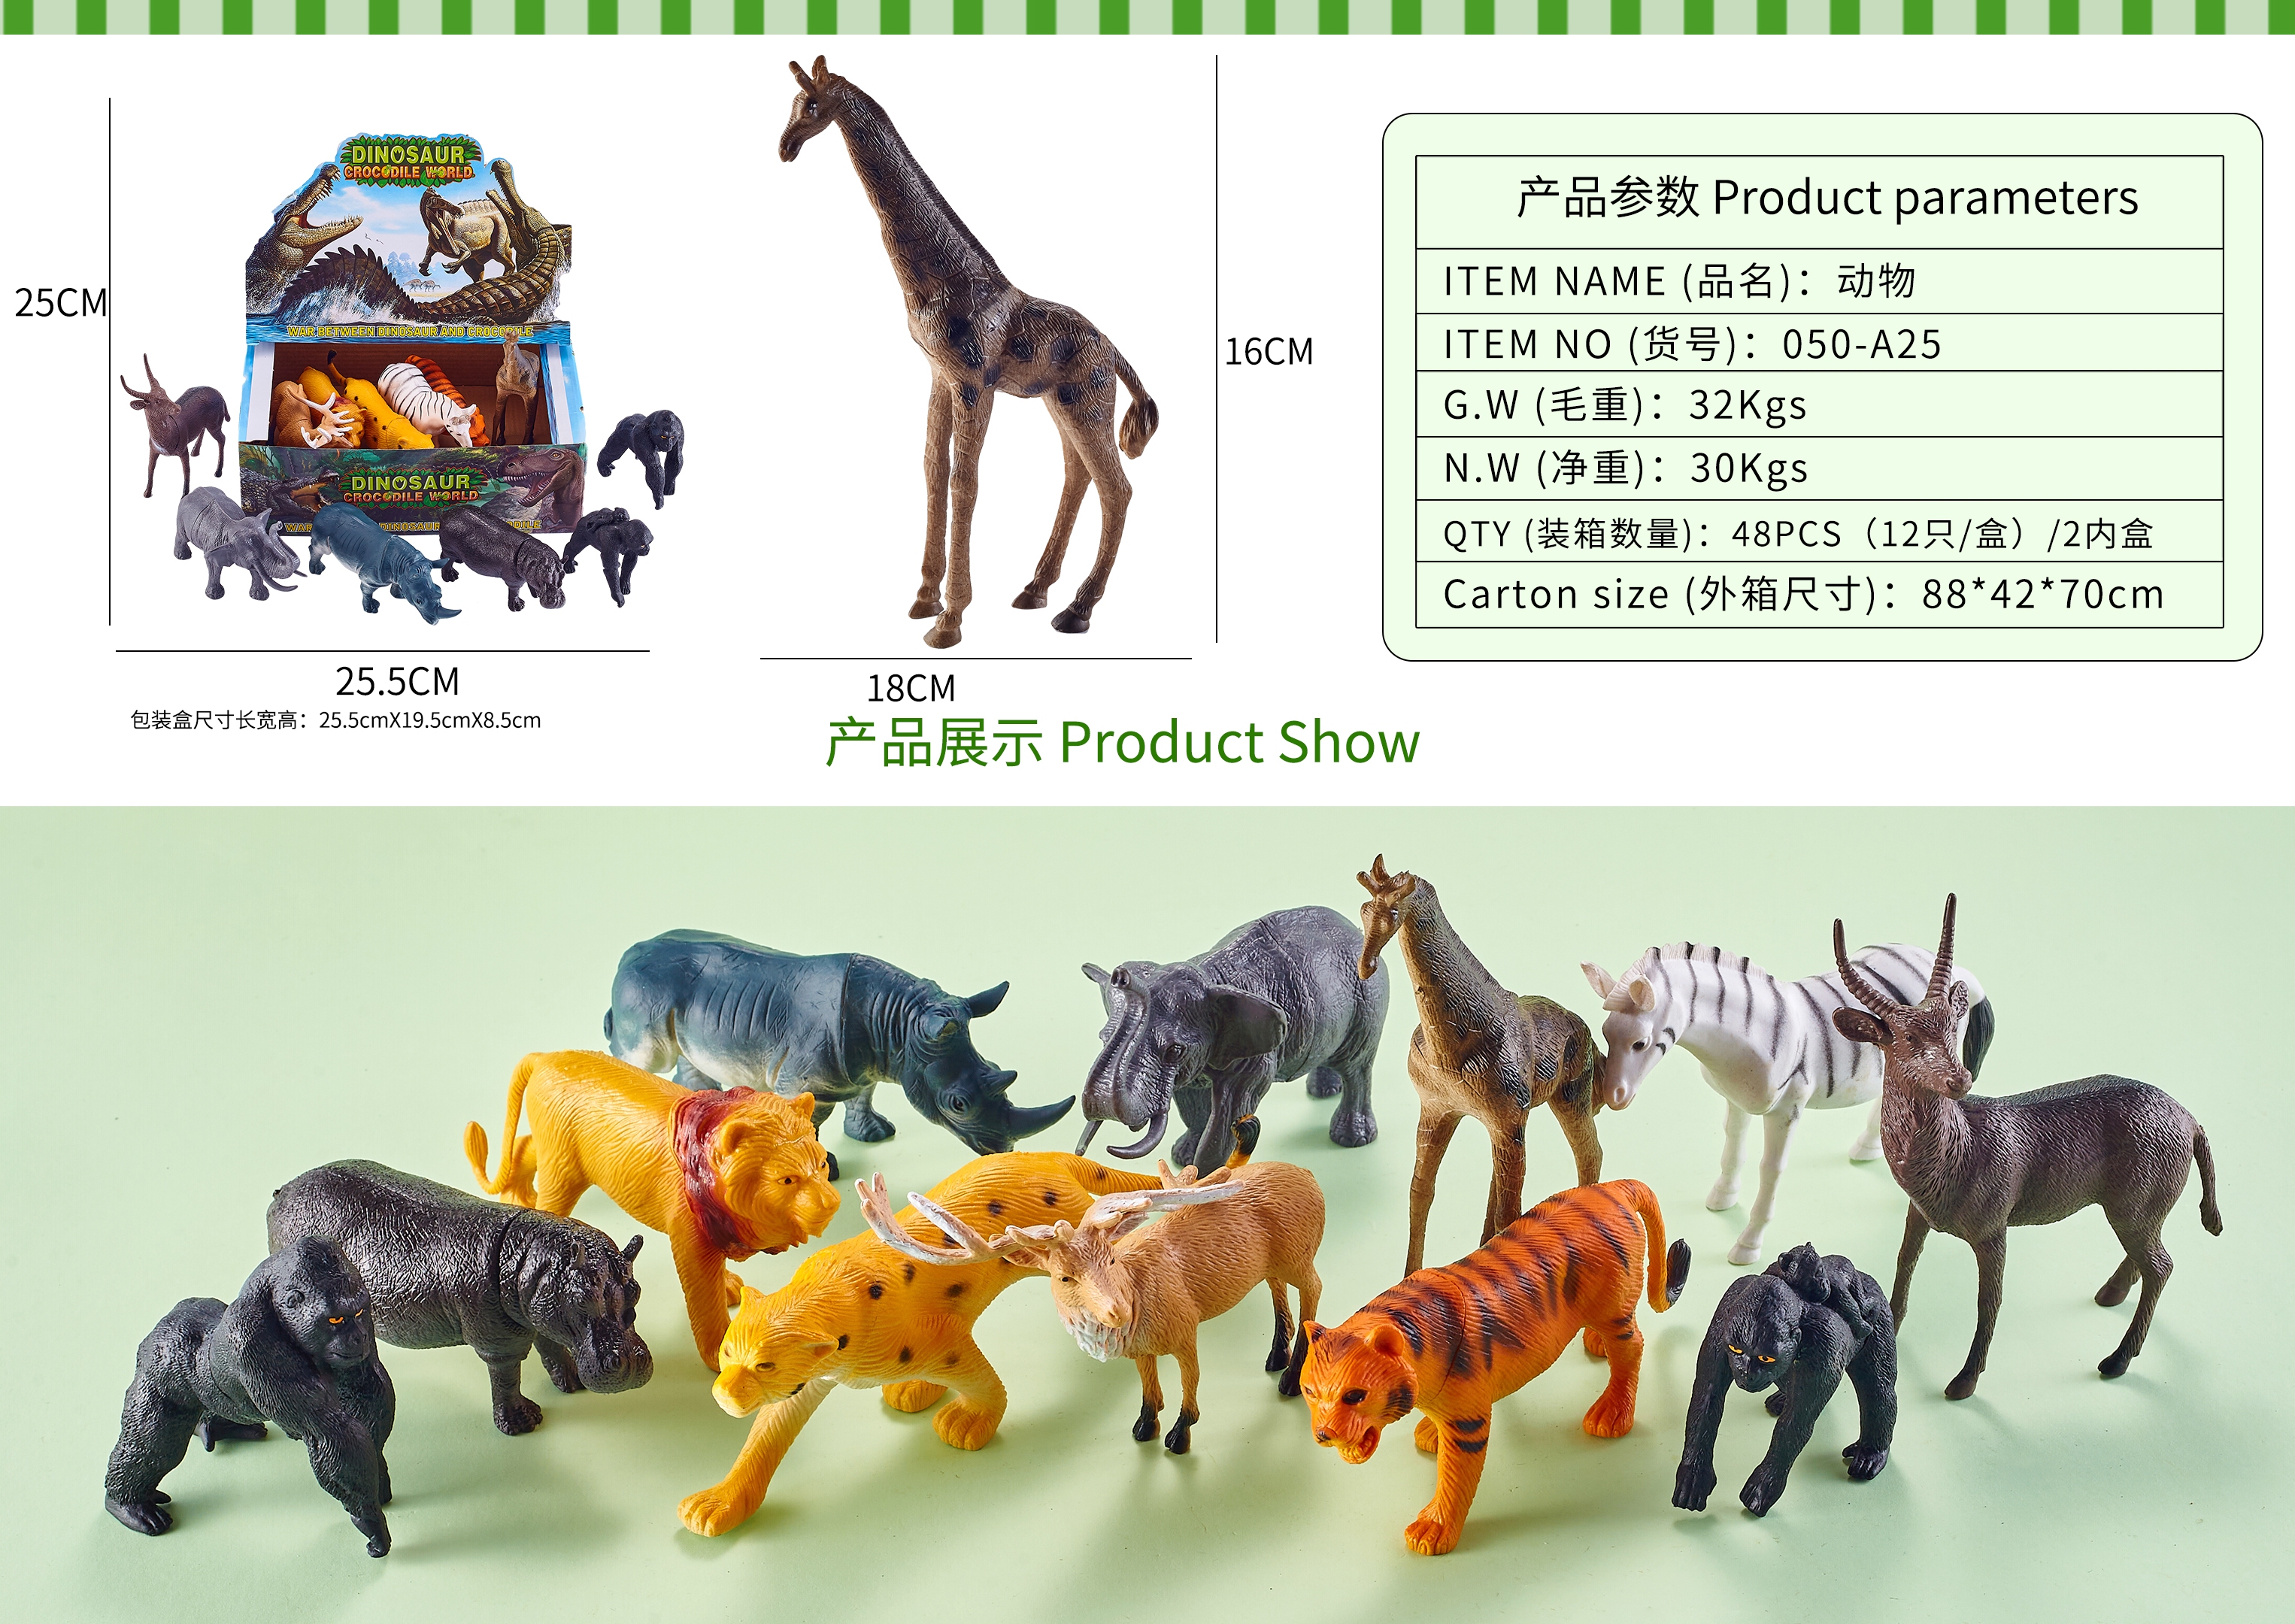 义乌黄荣仁玩具2776店面模型玩具野生动物恐龙玩具海洋动物系列HC689图